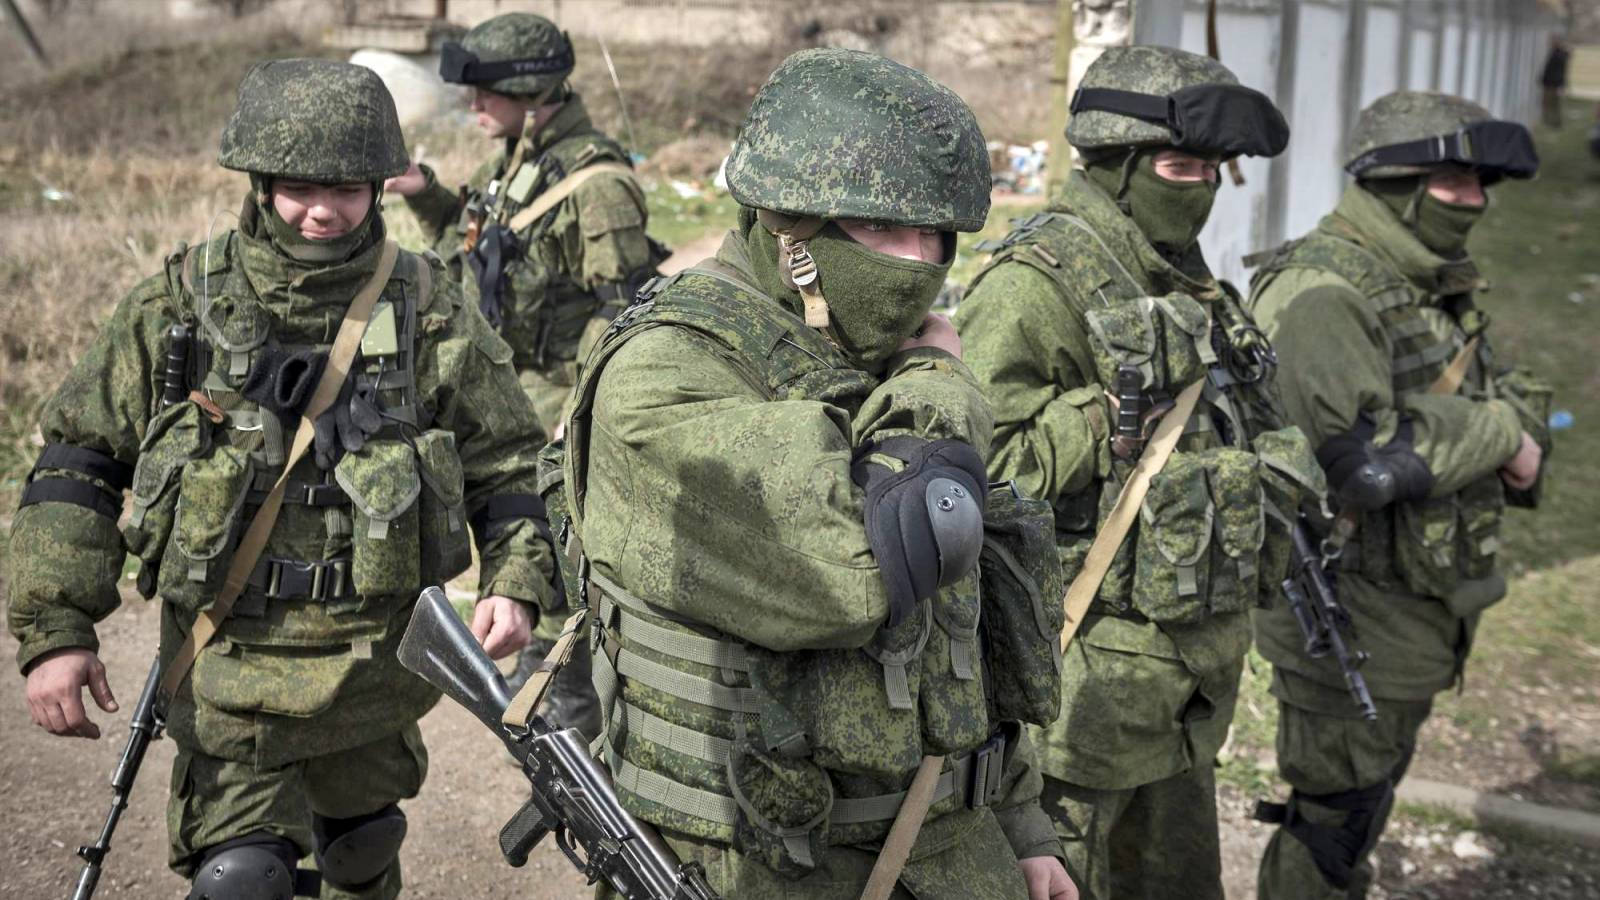 VIDEO Venäläissotilaat tappoivat ihmisiä odottamassa leipäjonoa